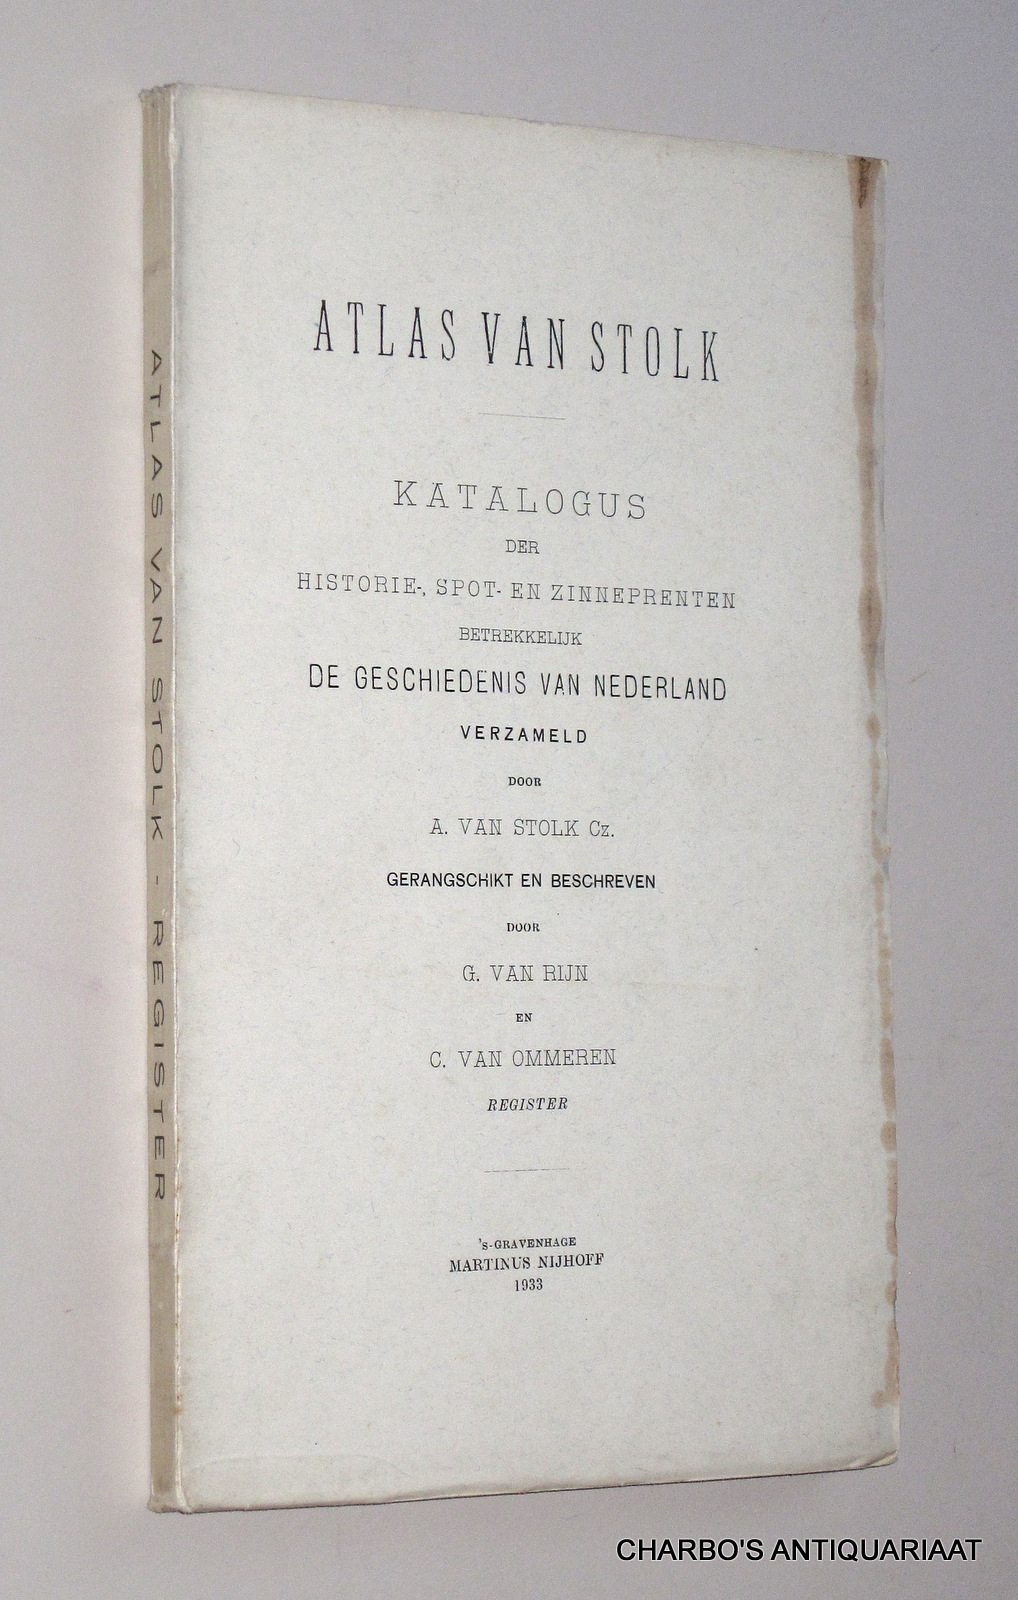 RIJN, G. VAN & OMMEREN, C. VAN, -  Atlas van Stolk. Katalogus der historie-, spot- en zinneprenten betrekkelijk de geschiedenis van Nederland. Deel 11: Register.